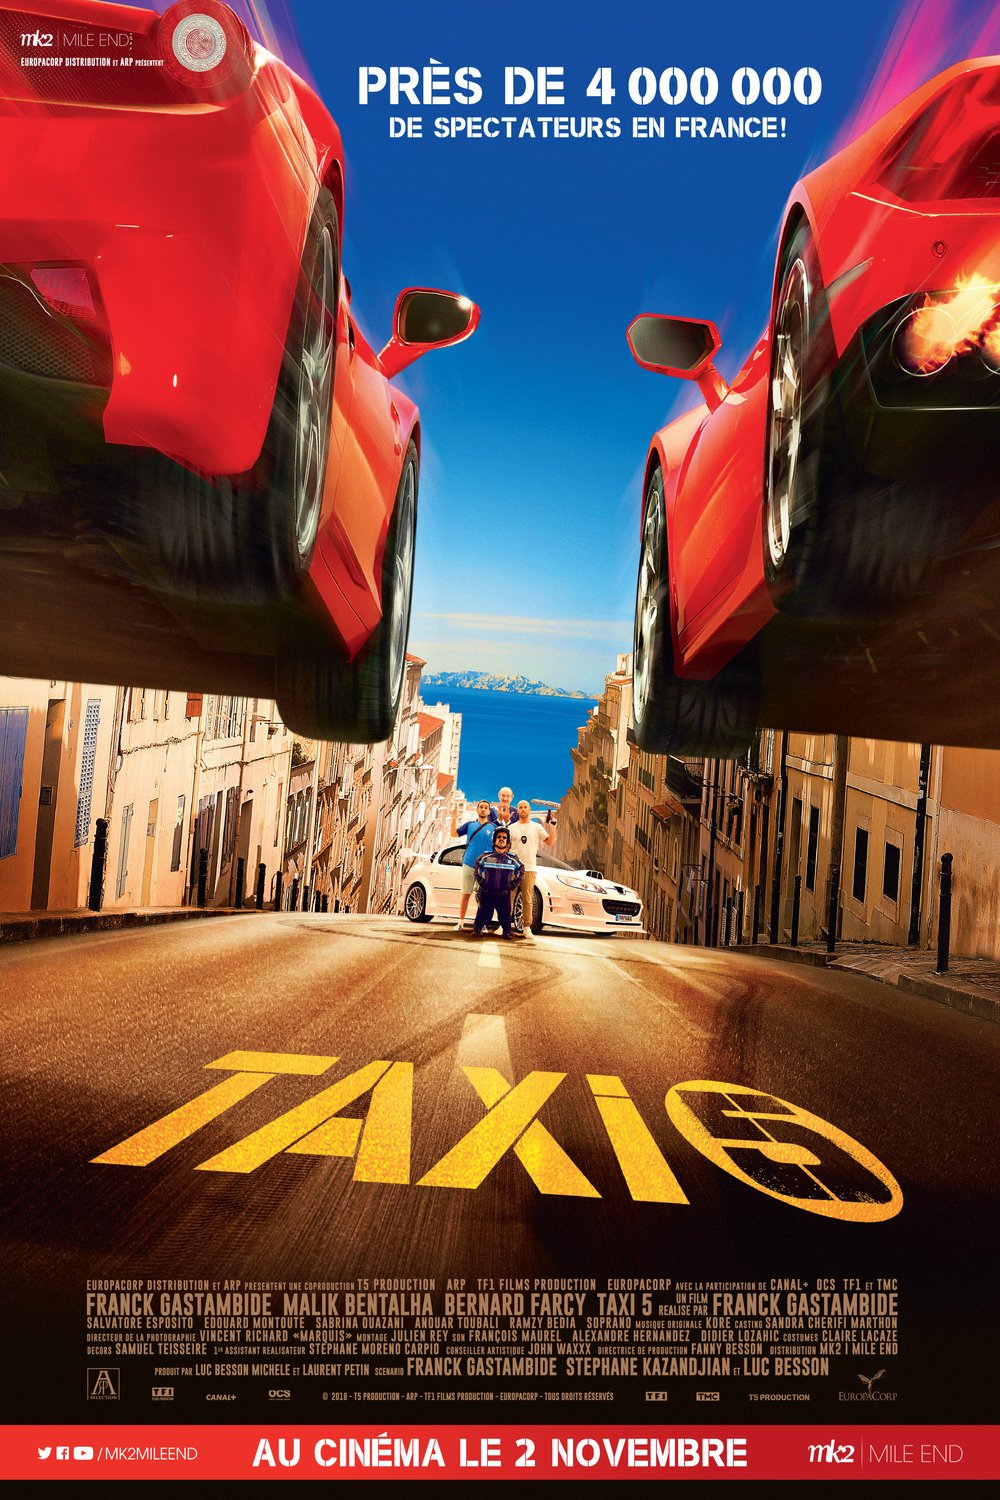 L'affiche du film Taxi 5